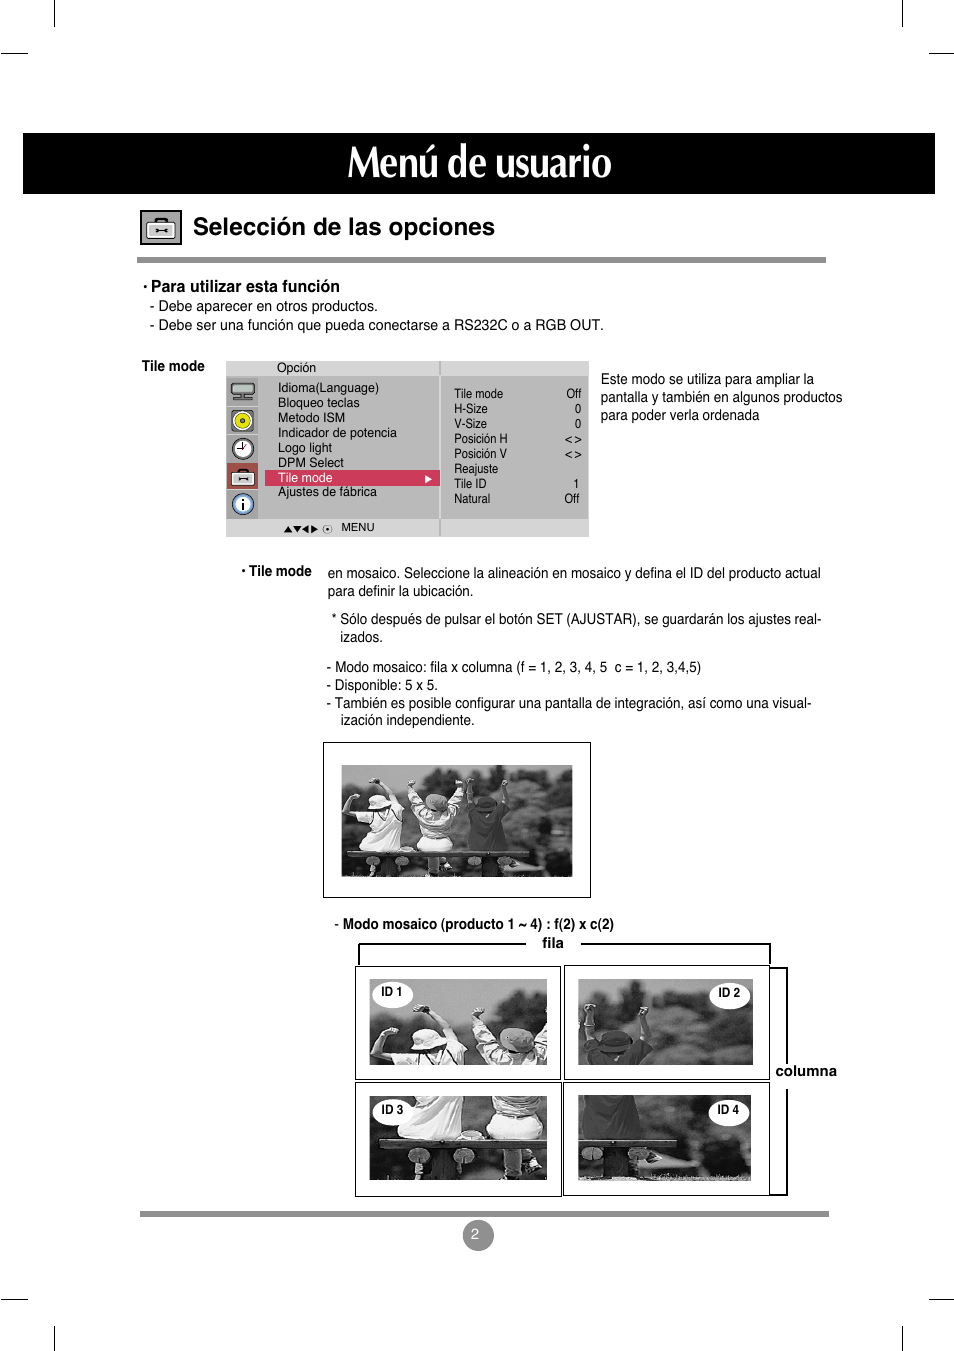 Menú de usuario, Selección de las opciones | LG M4212C-BA User Manual | Page 30 / 67